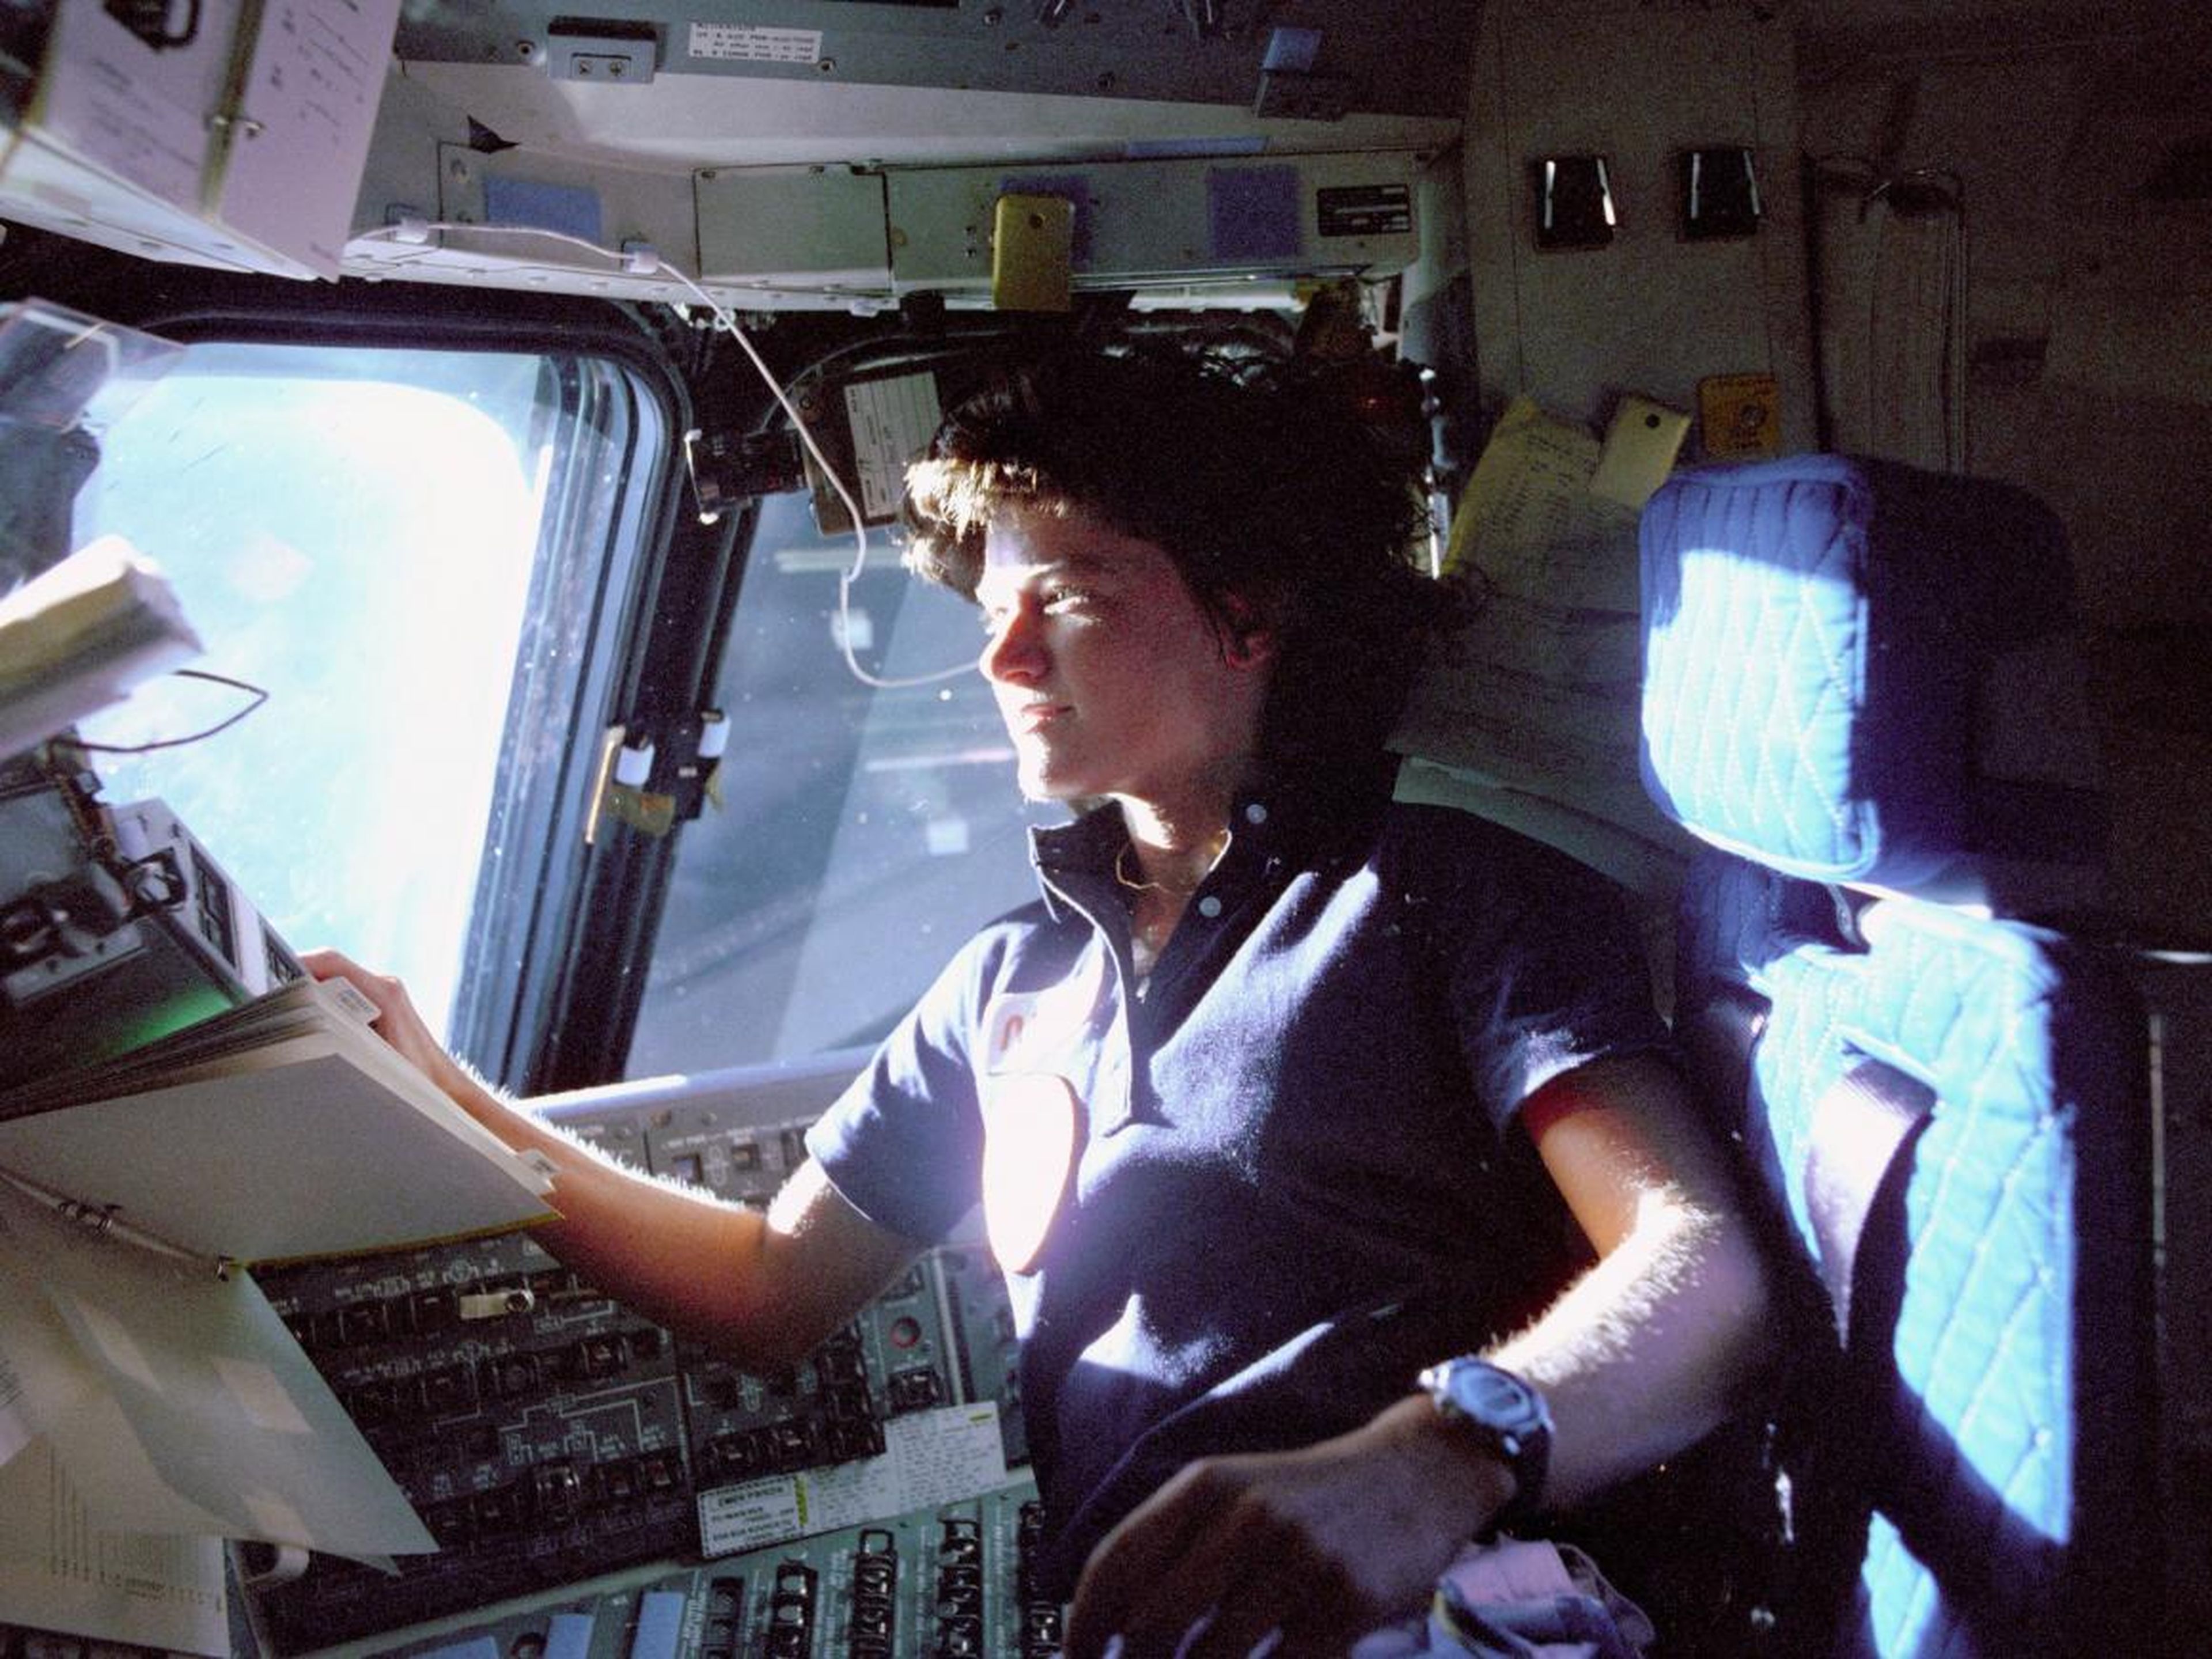 Sally Ride, la primera astronauta estadounidense en el espacio, monitoriza los paneles de control desde la cubierta de vuelo.